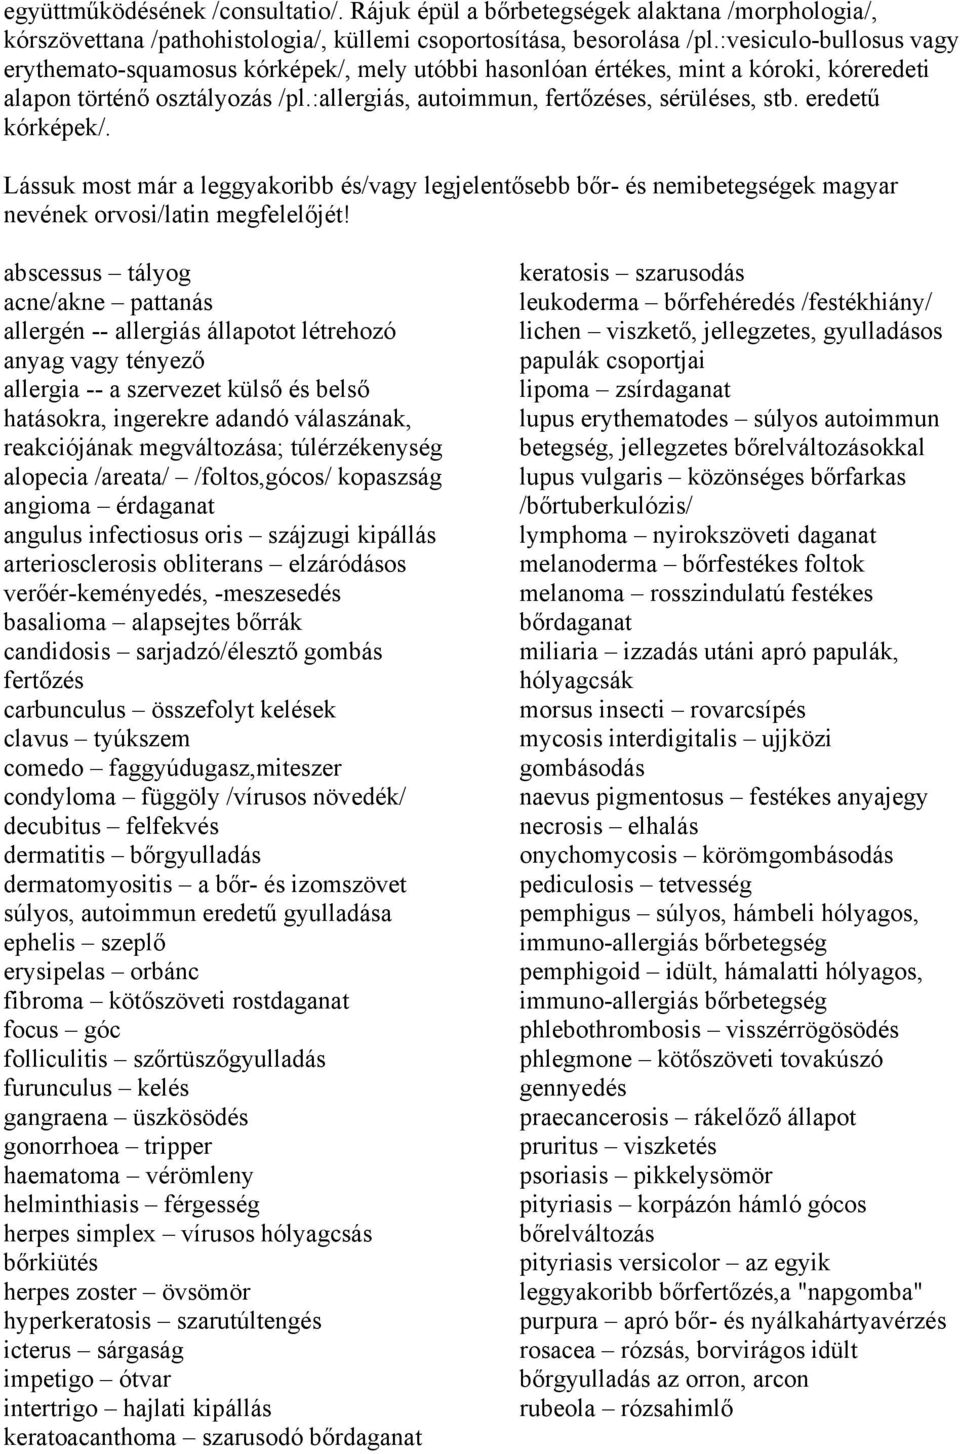 eredetű kórképek/. Lássuk most már a leggyakoribb és/vagy legjelentősebb bőr- és nemibetegségek magyar nevének orvosi/latin megfelelőjét!